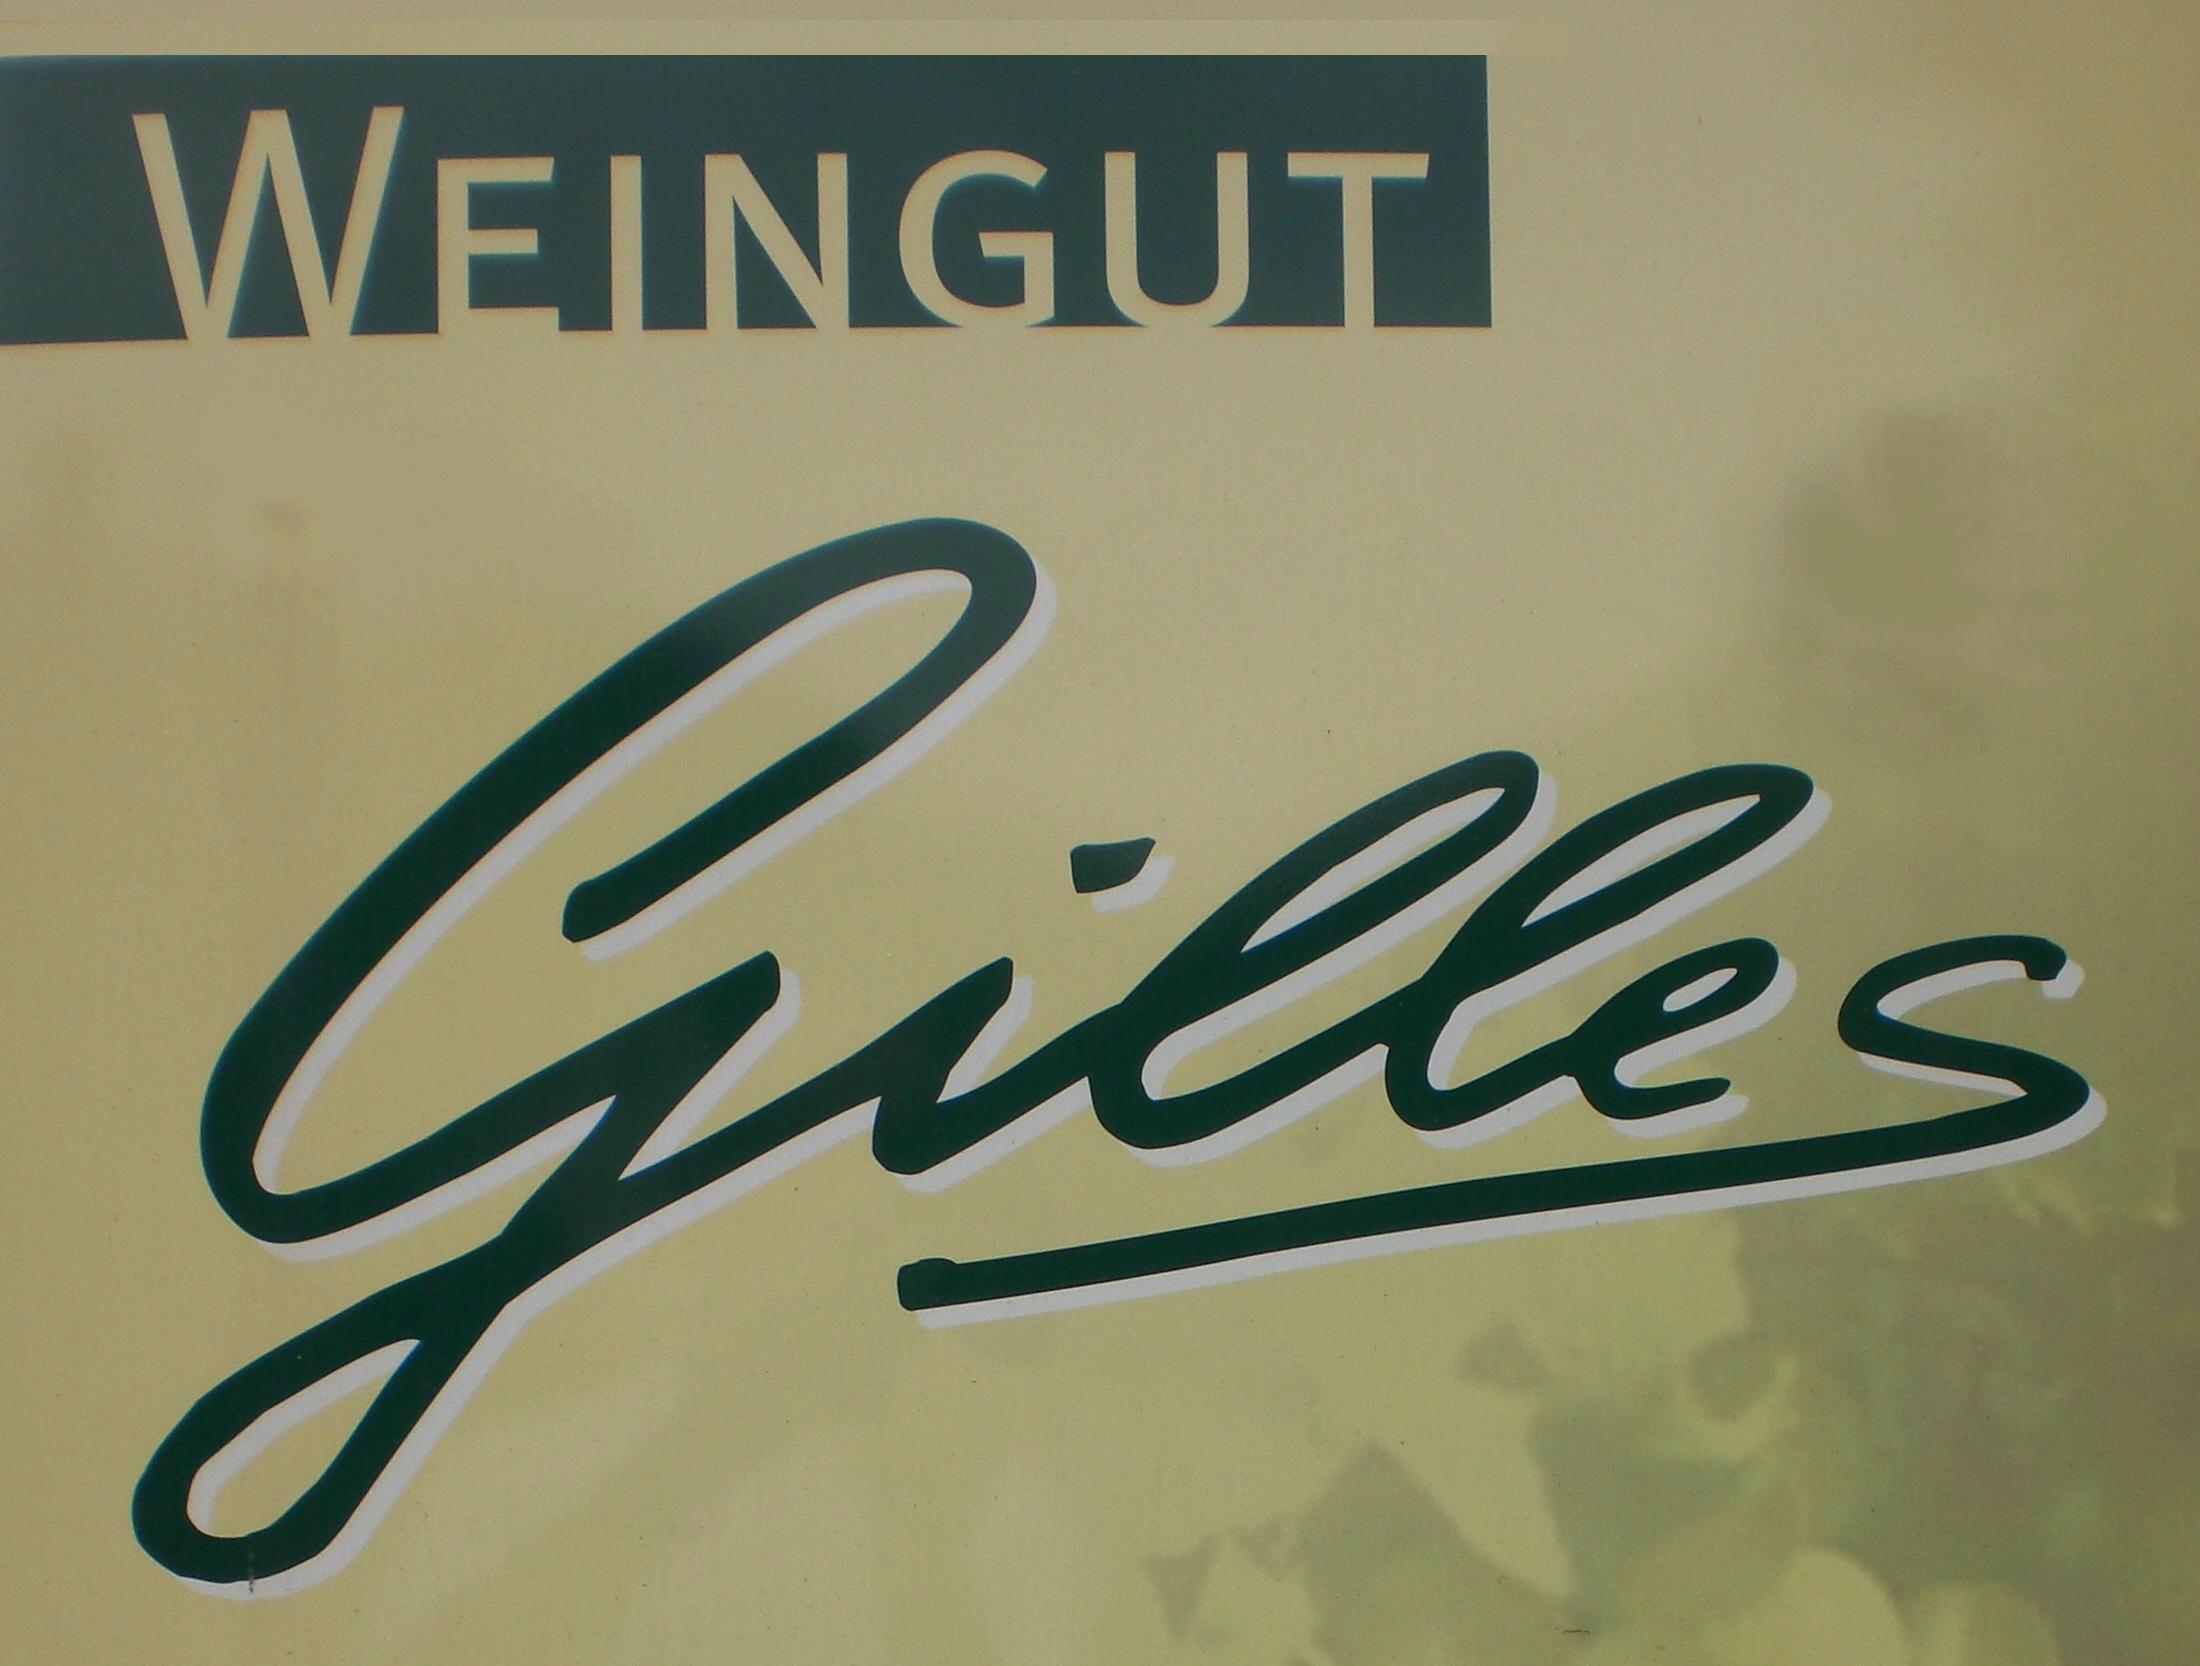 Weingut Gilles Logo